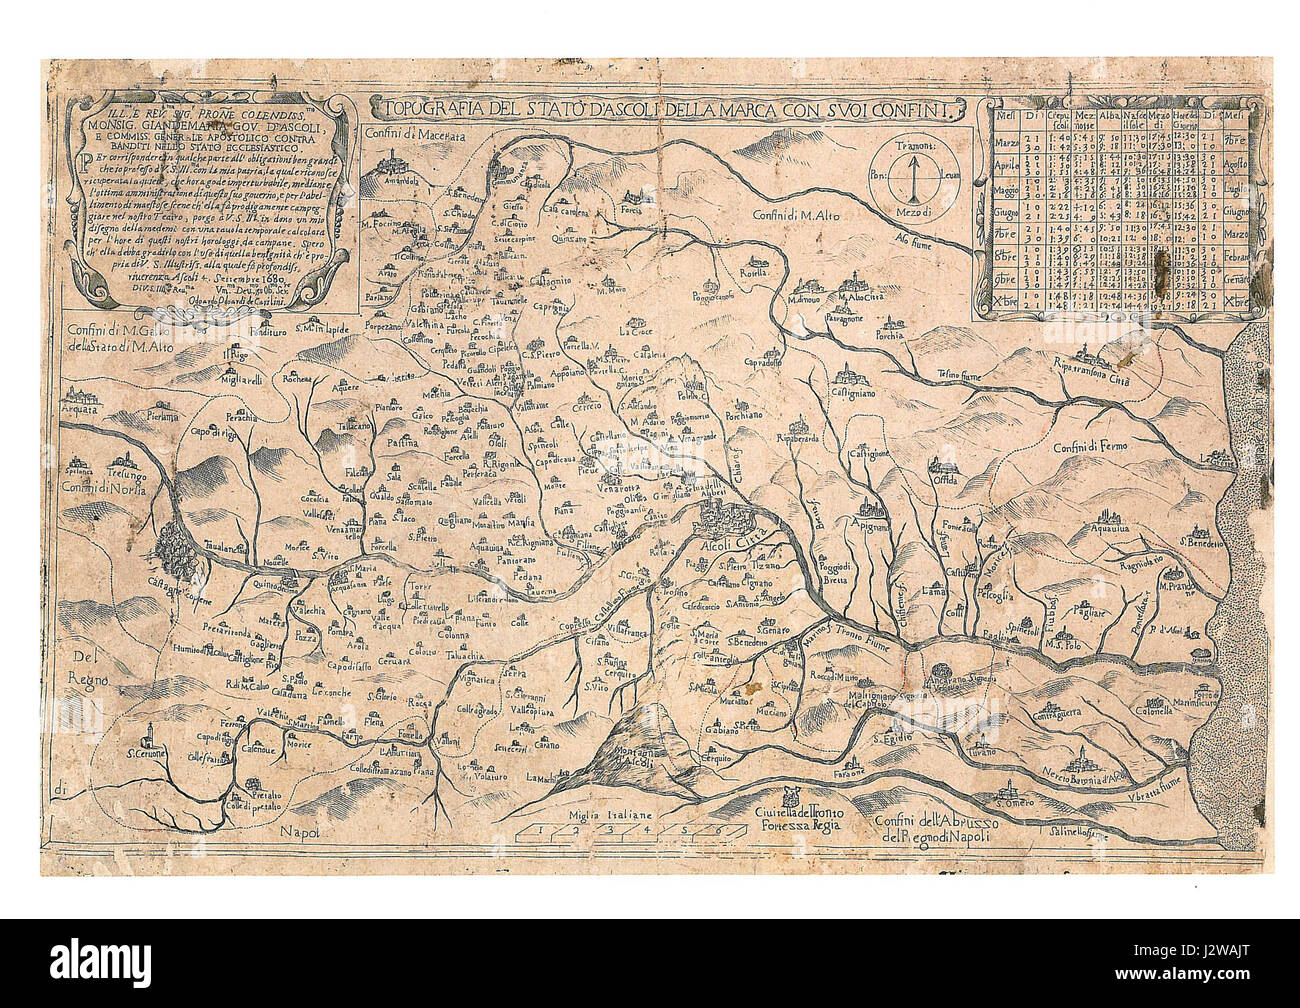 11 - Topografia Del Stato D'Ascoli Della Marca Con Suoi Confini, 1680 - Odoardo Odoardi de' Catilini Stock Photo